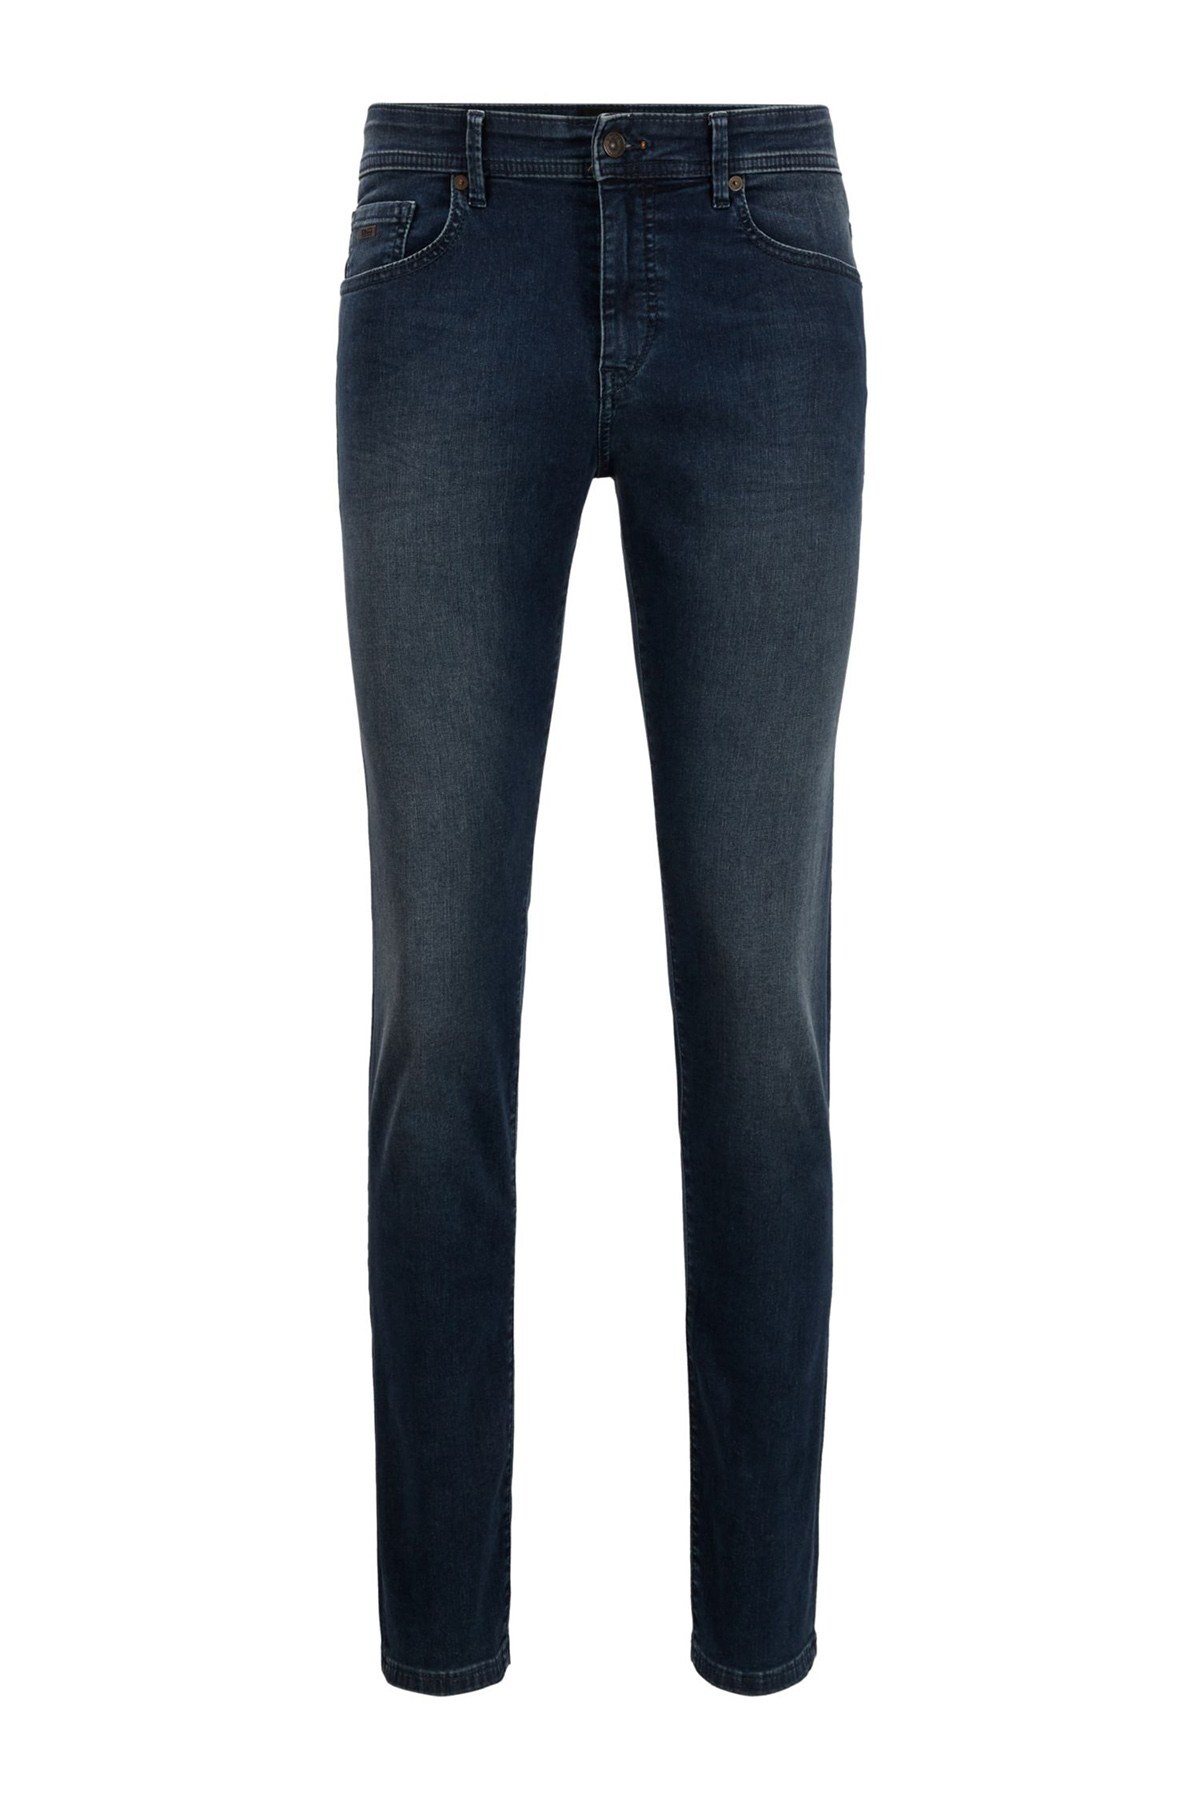 Hugo Boss Pamuklu Skinny Fit Jeans Erkek Kot Pantolon 50449016 410 LACİVERT